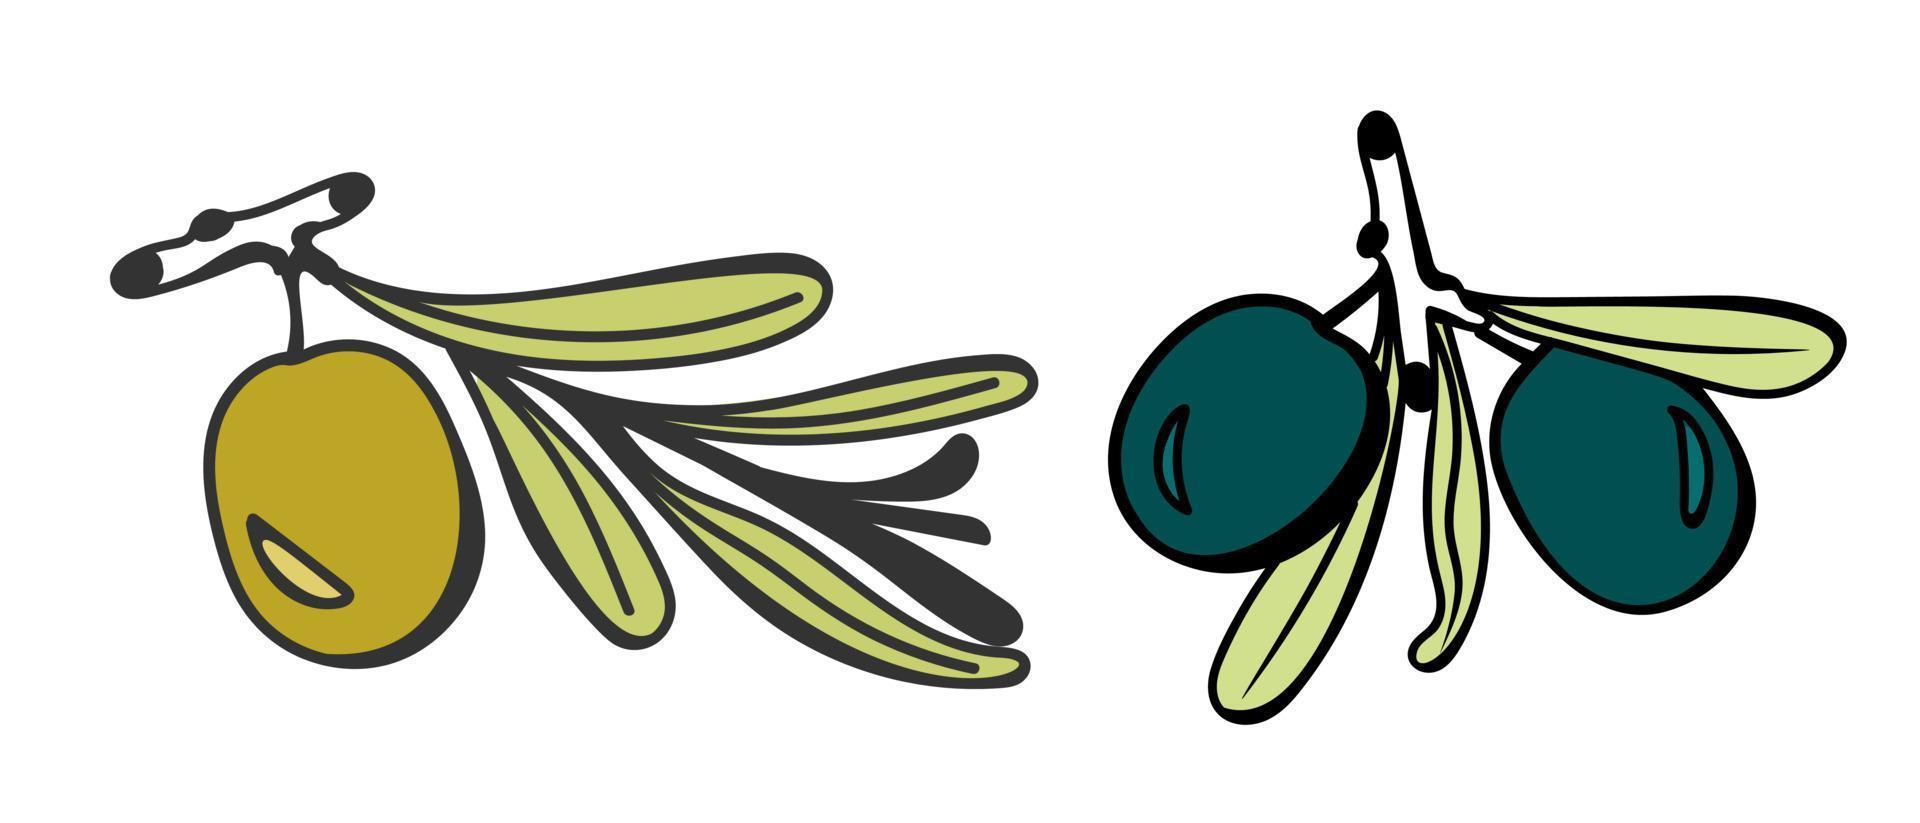 oliver på en gren är handritade i stil med en doodle. för användning på textilier, förpackningspapper, souvenirer, tryck, affischer, vykort. vektor